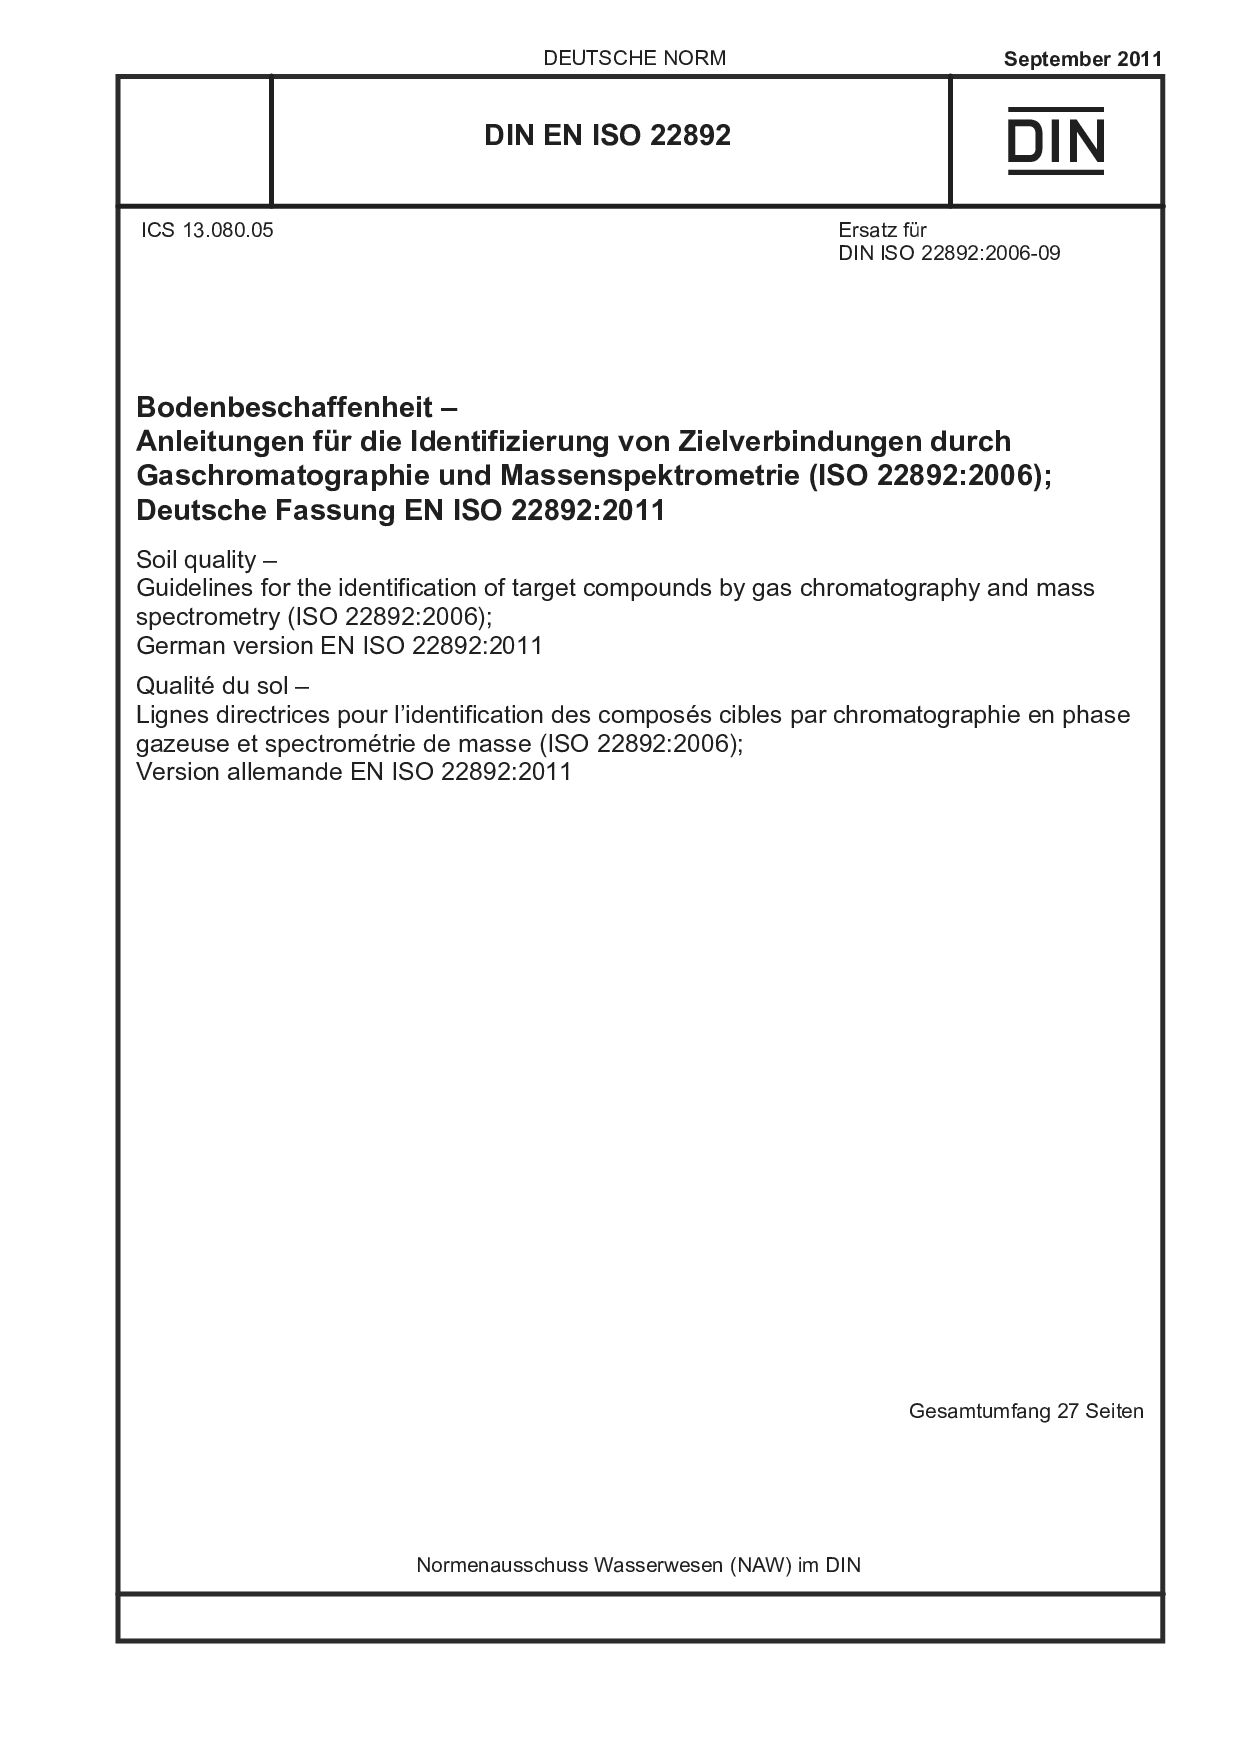 DIN EN ISO 22892:2011封面图